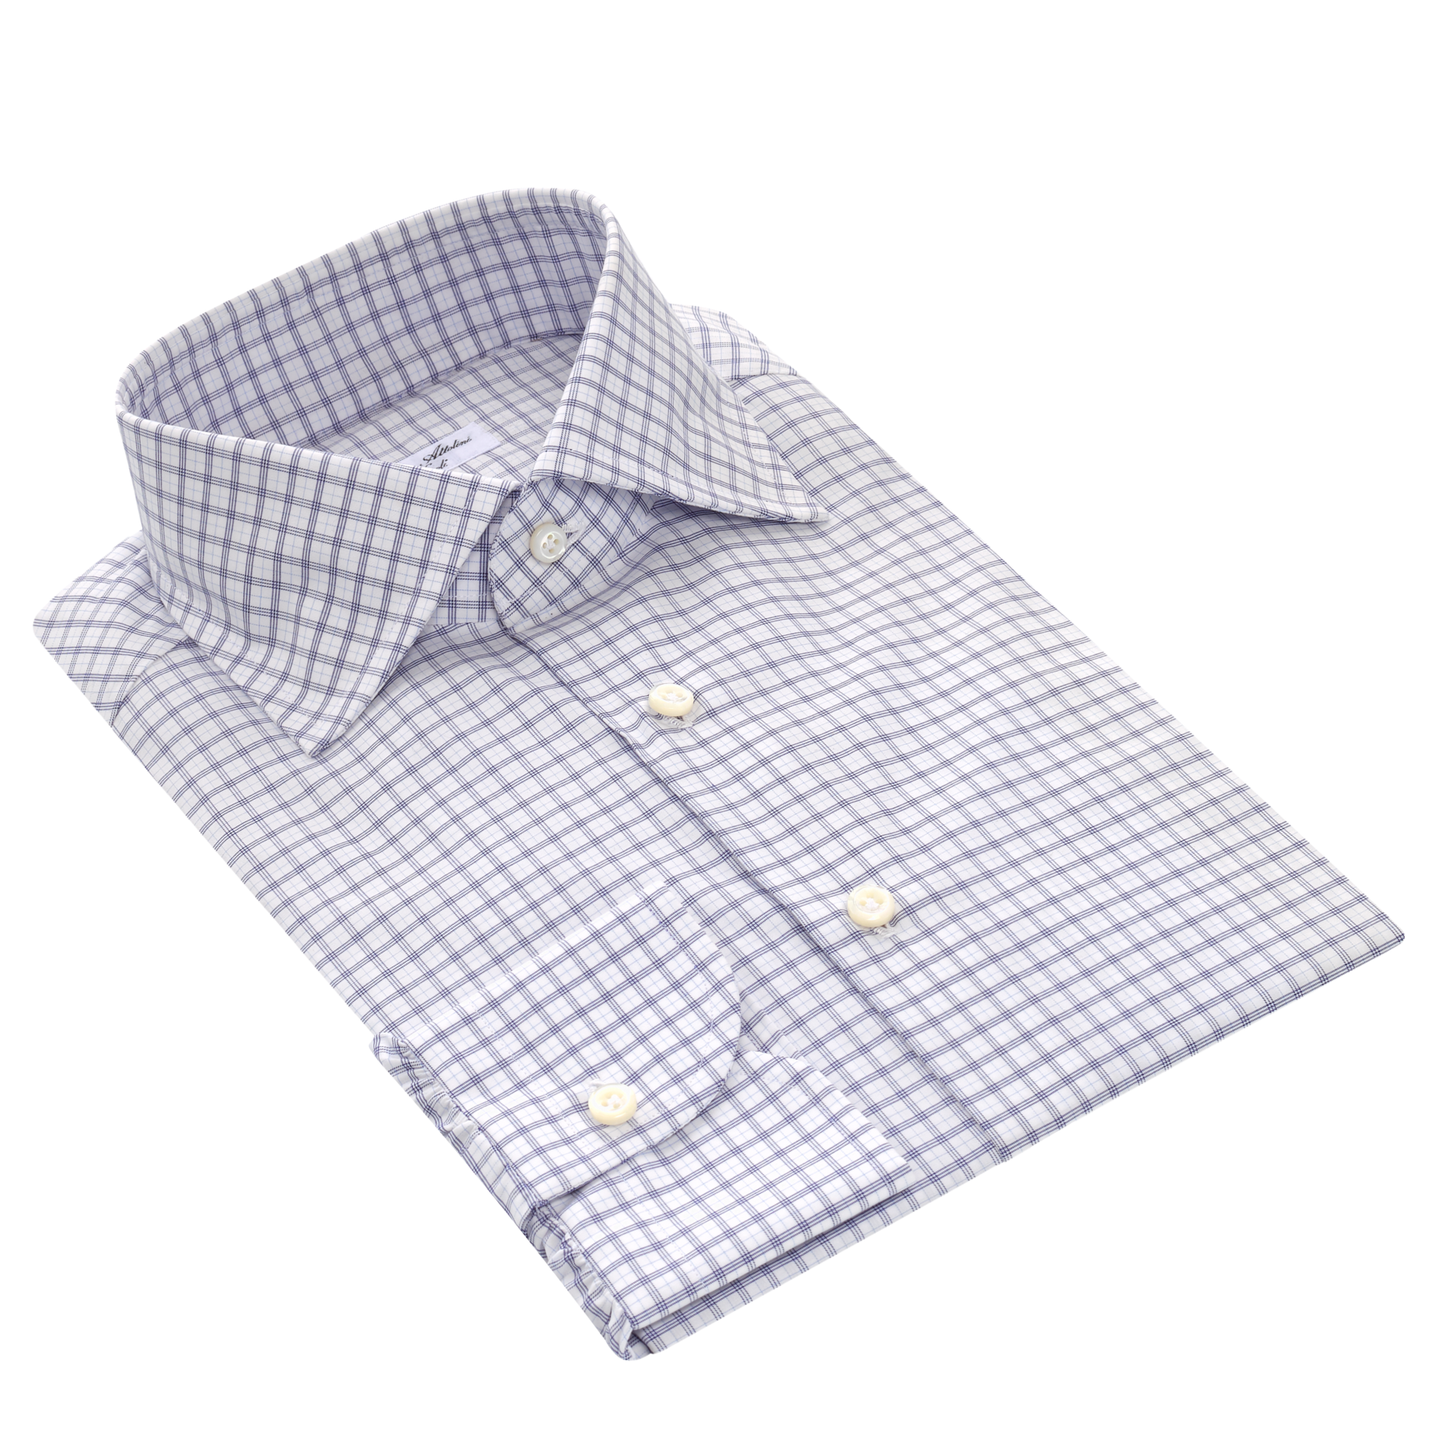 Cesare Attolini Checked Cotton Shirt in White and Blue - SARTALE